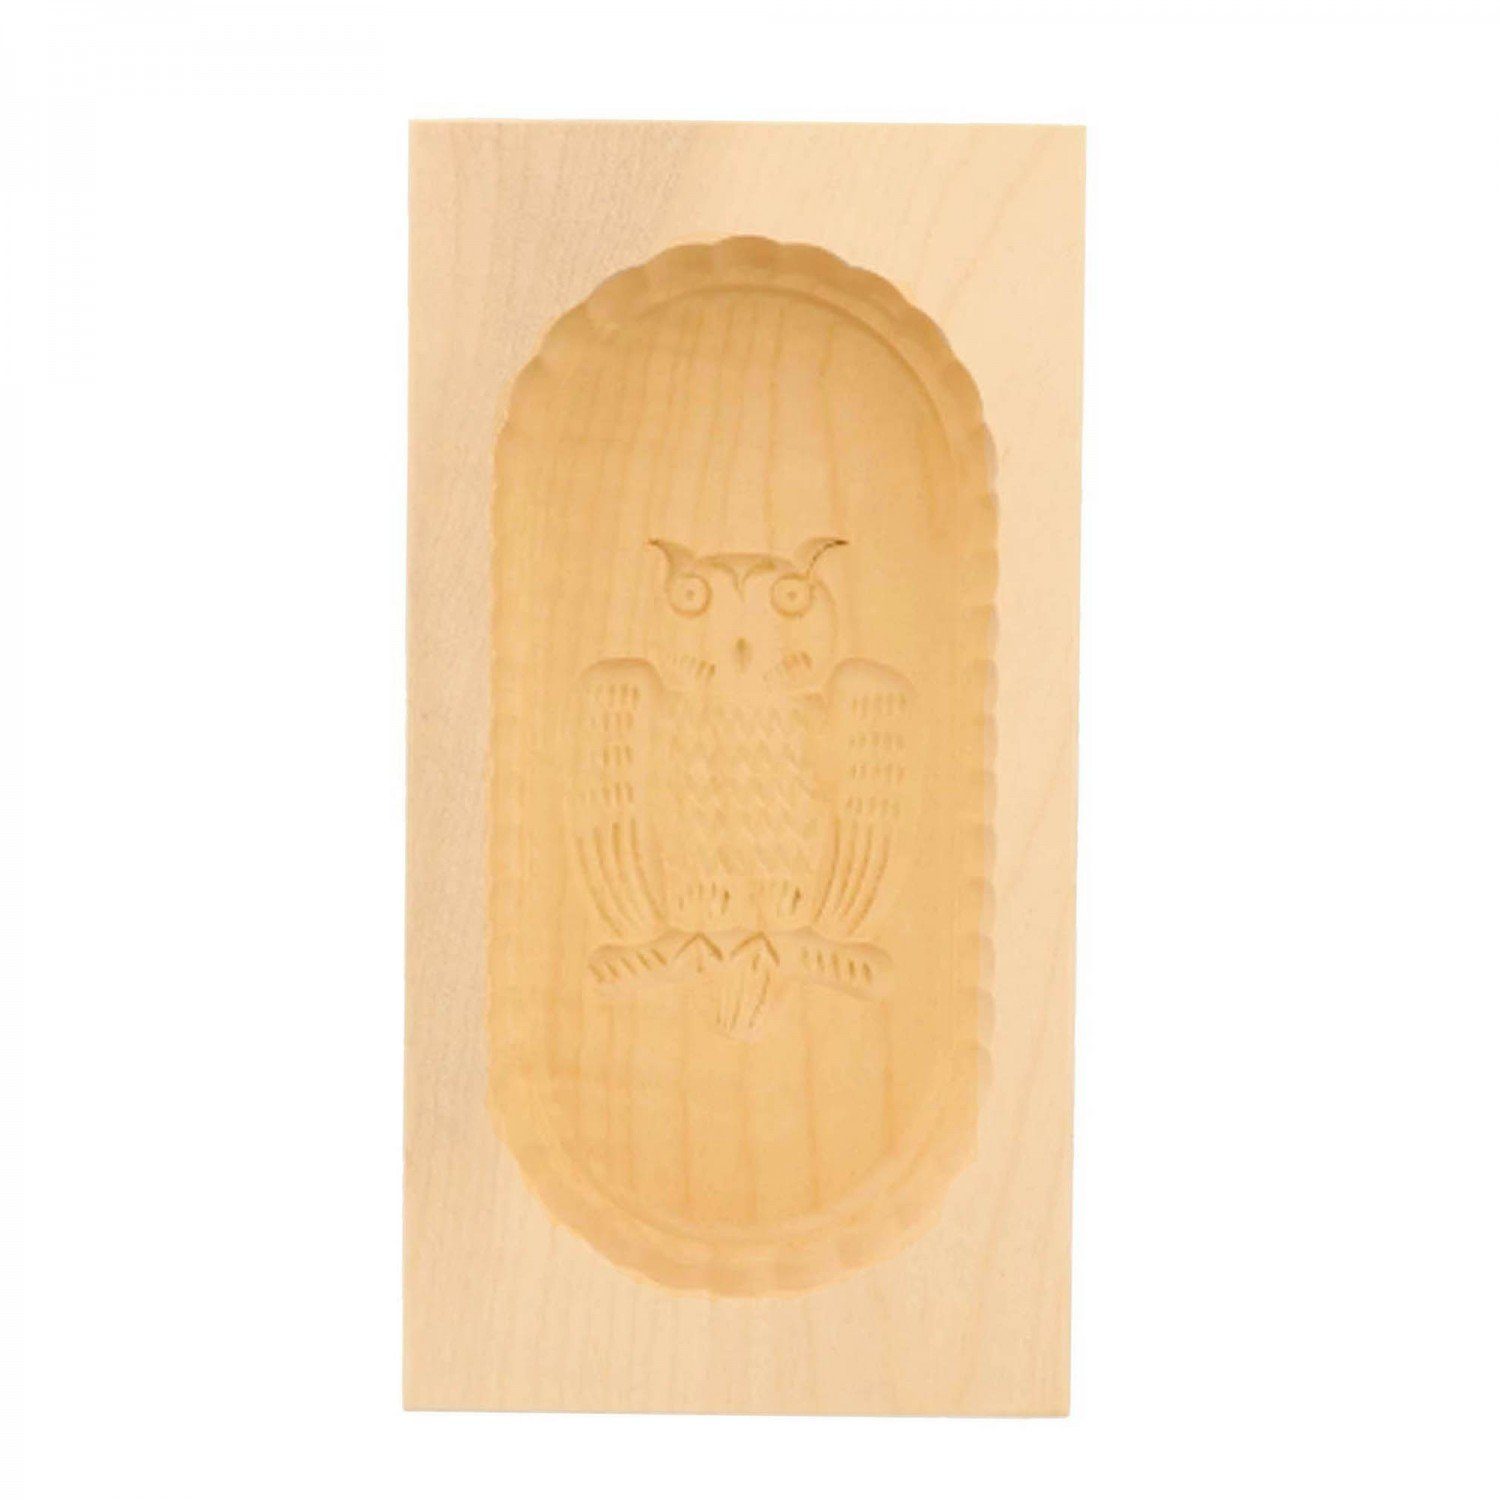 mitienda Servierplatte Butterform 250g Holz Motiv, Eulen aus Sturz-Form